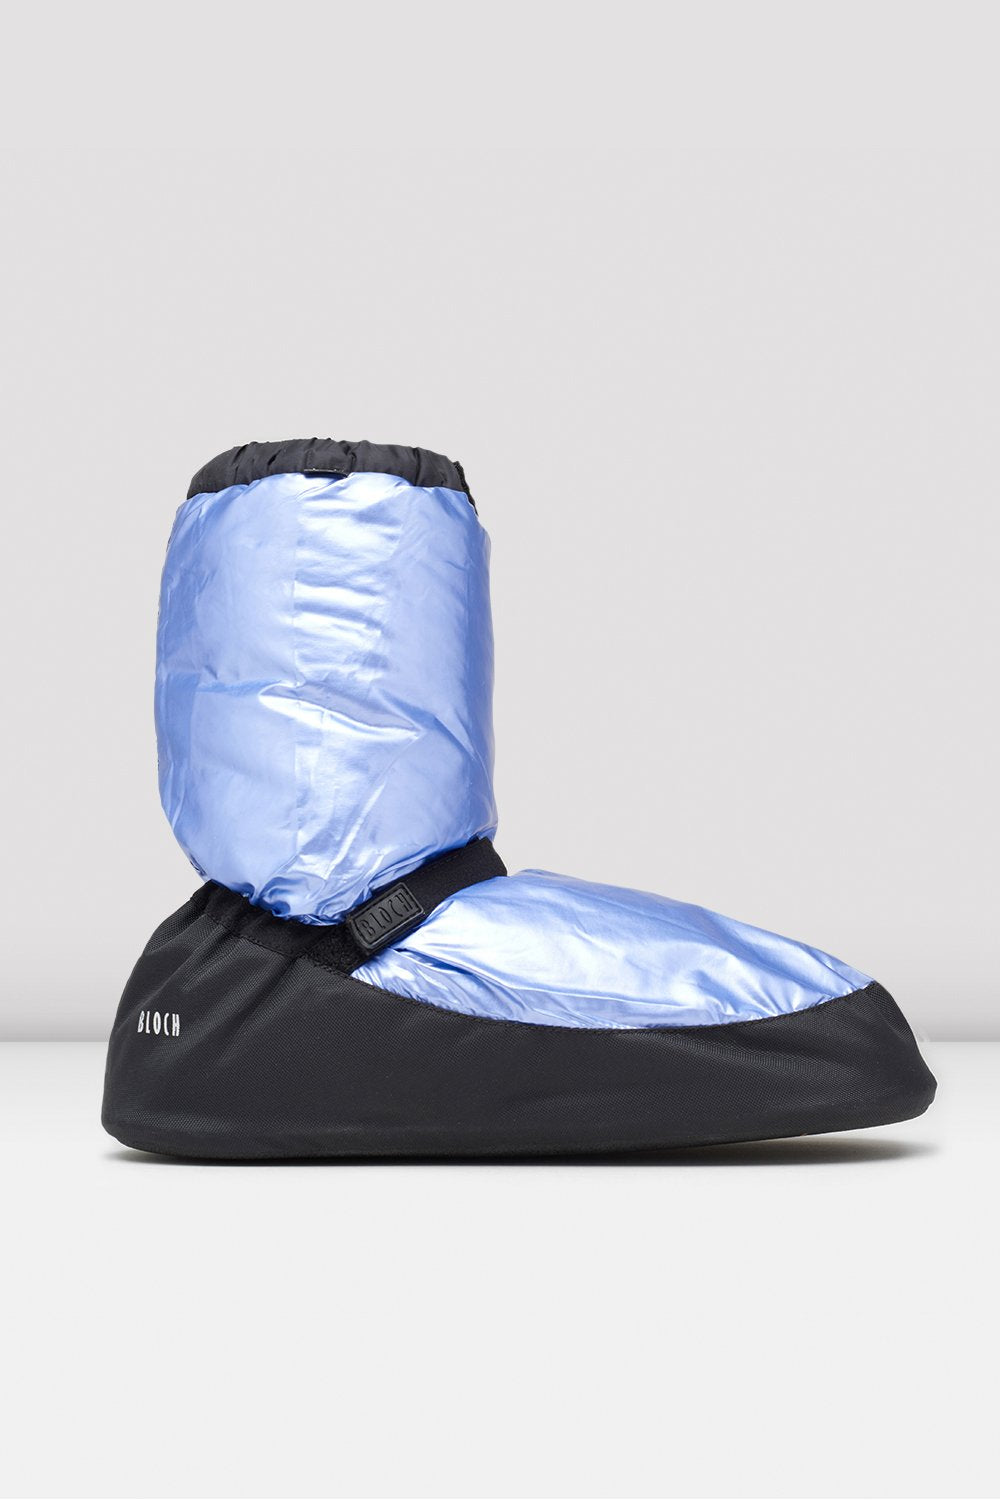 metallic blue booties